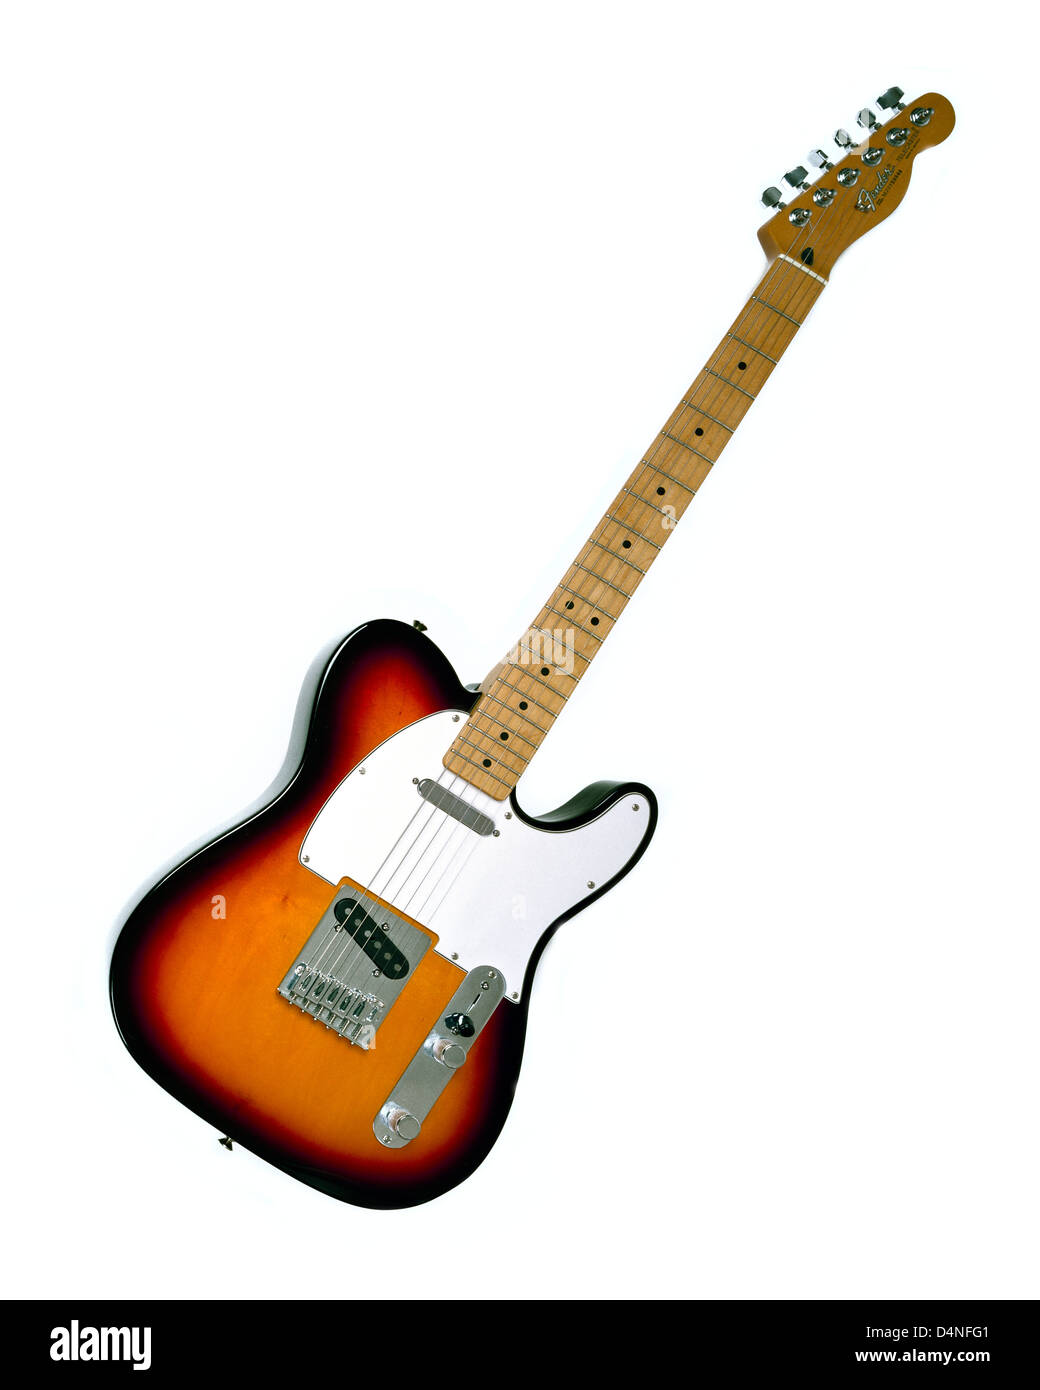 Fender telecaster guitar immagini e fotografie stock ad alta risoluzione -  Alamy